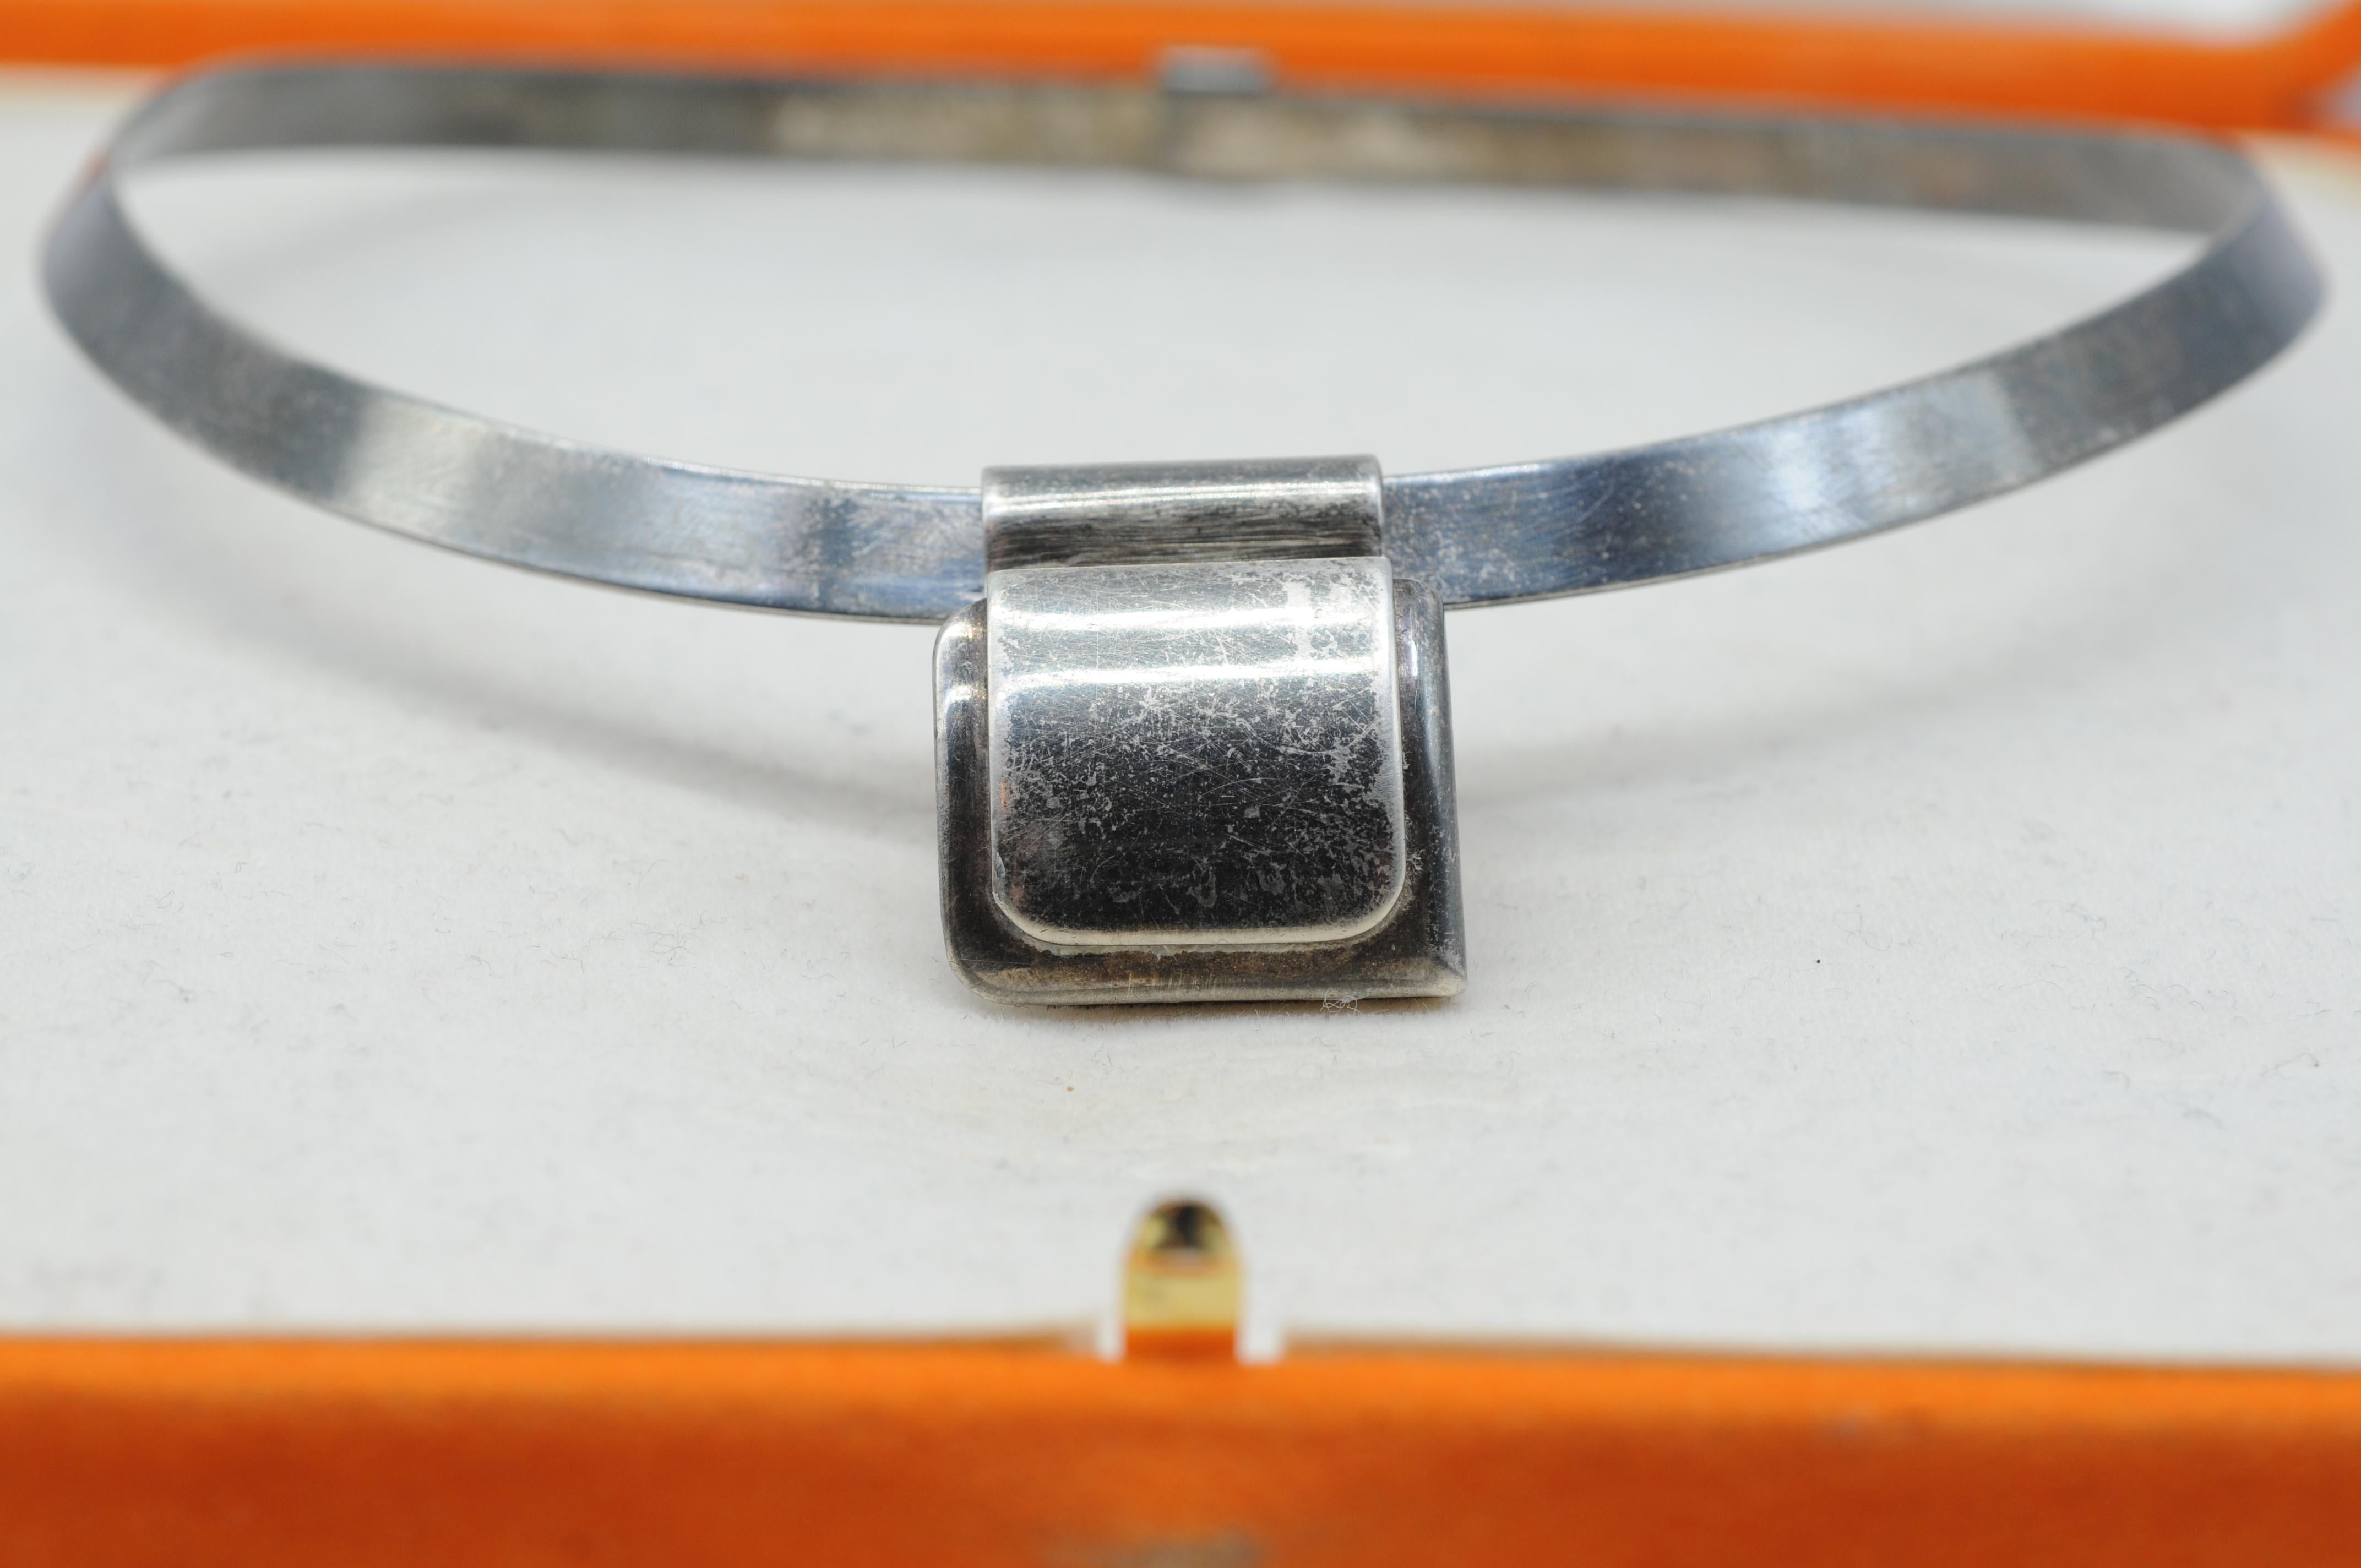 Die bezaubernde antike Vintage-Halskette der renommierten Marke Hermes ist aus Sterlingsilber gefertigt. Dieses wunderschöne Schmuckstück ist nicht nur eine Halskette, sondern ein verehrter und zeitloser Schatz, der das Markenzeichen des